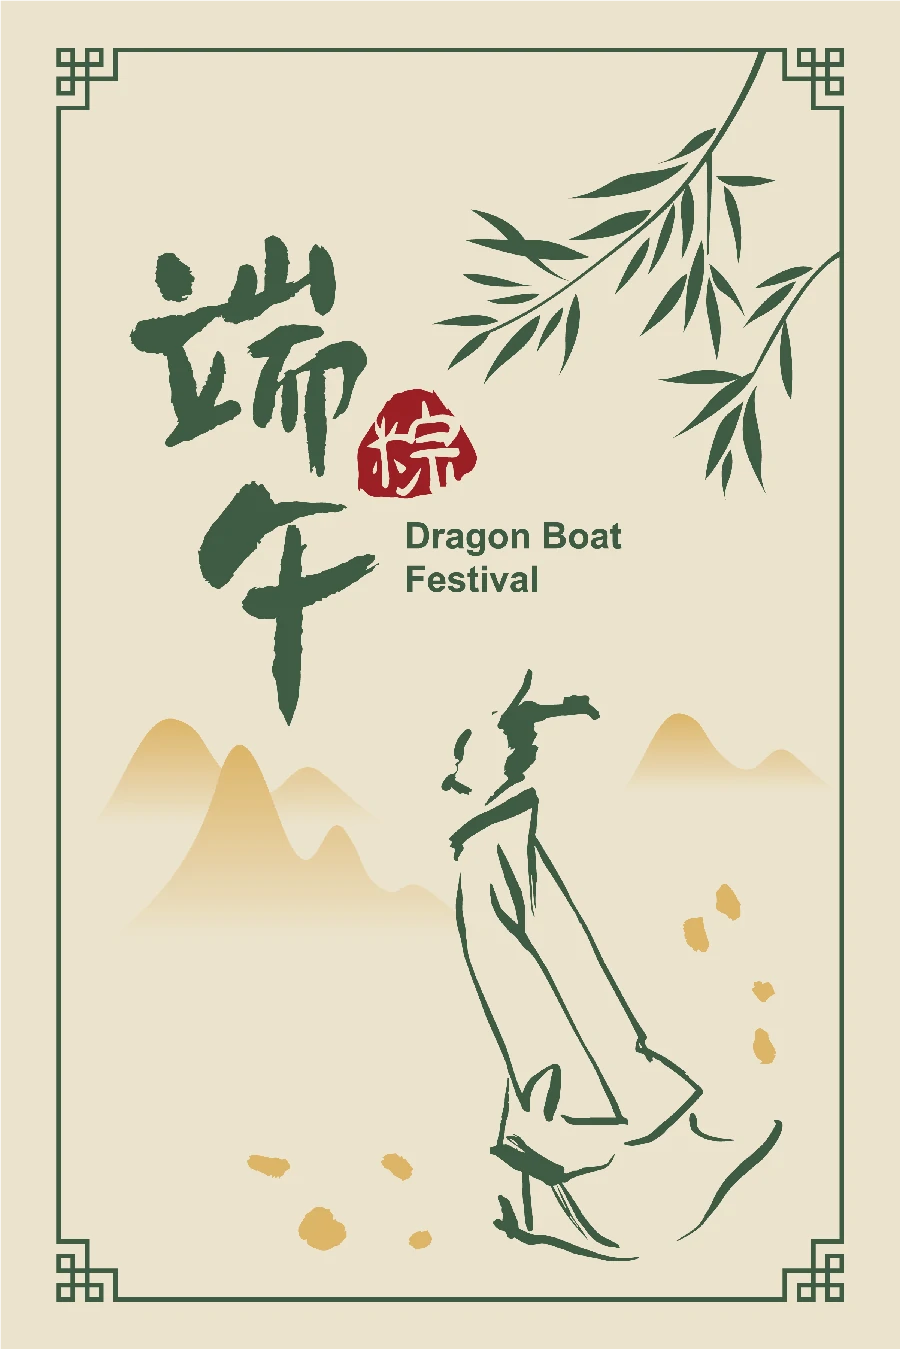 中国风传统节日端午节屈原划龙舟包粽子节日插画海报AI矢量素材【013】